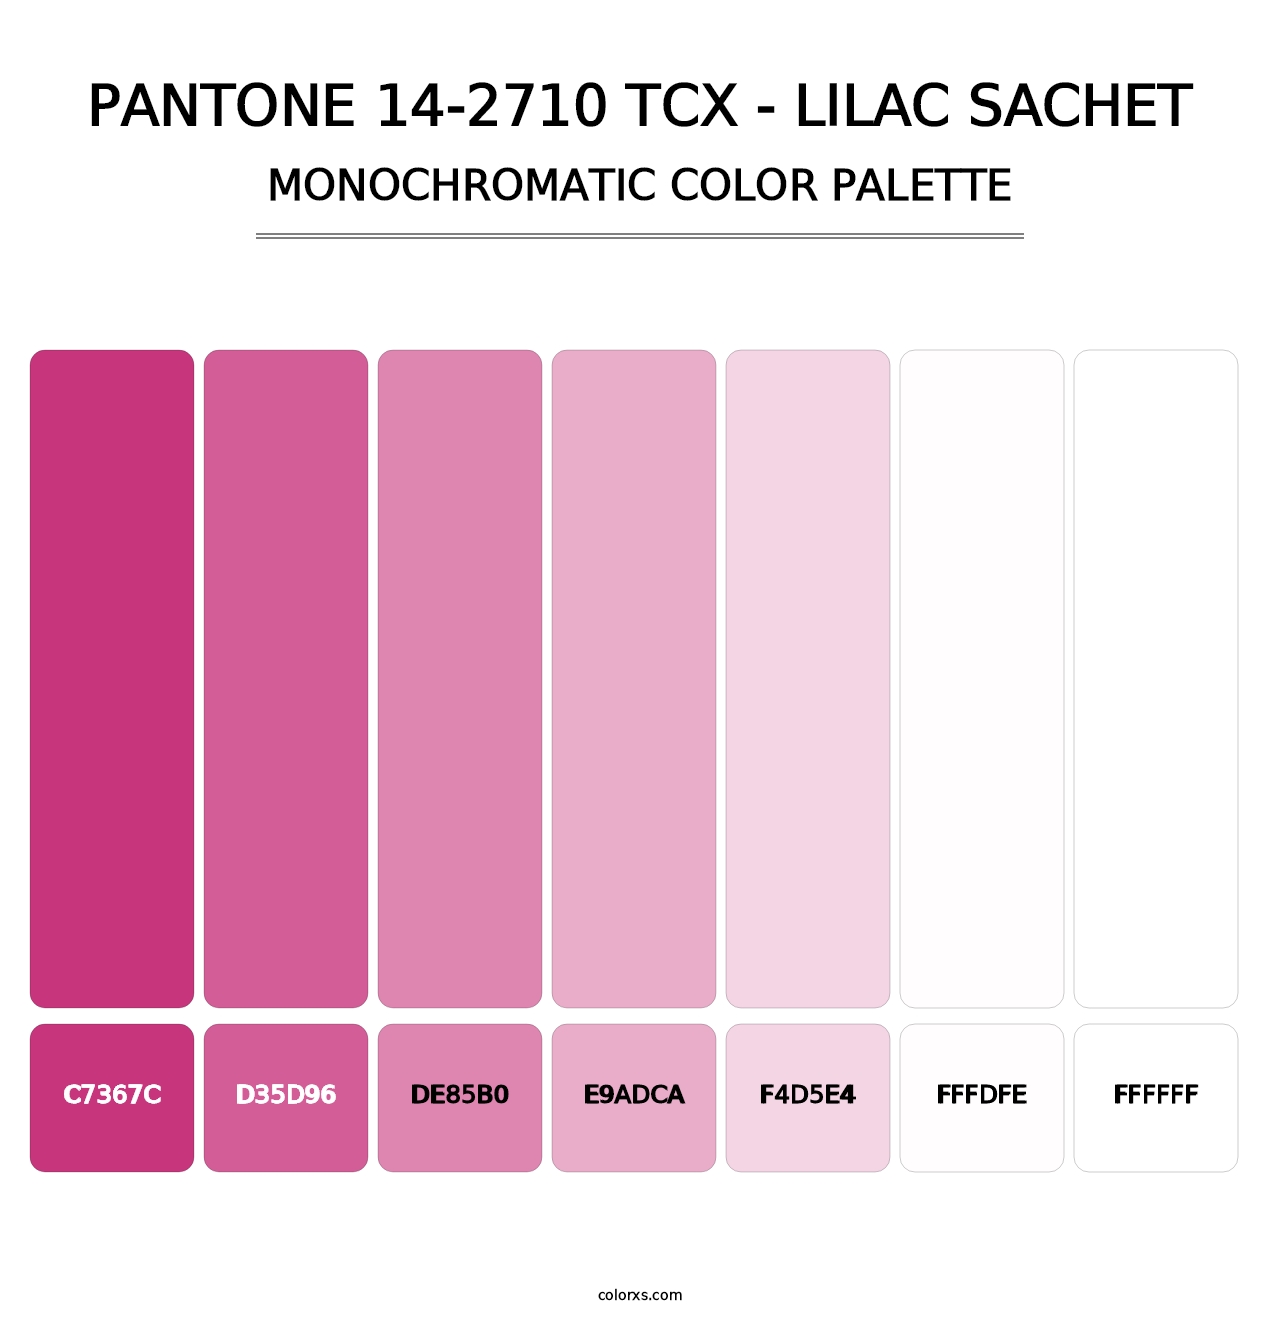 PANTONE 14-2710 TCX - Lilac Sachet - Monochromatic Color Palette